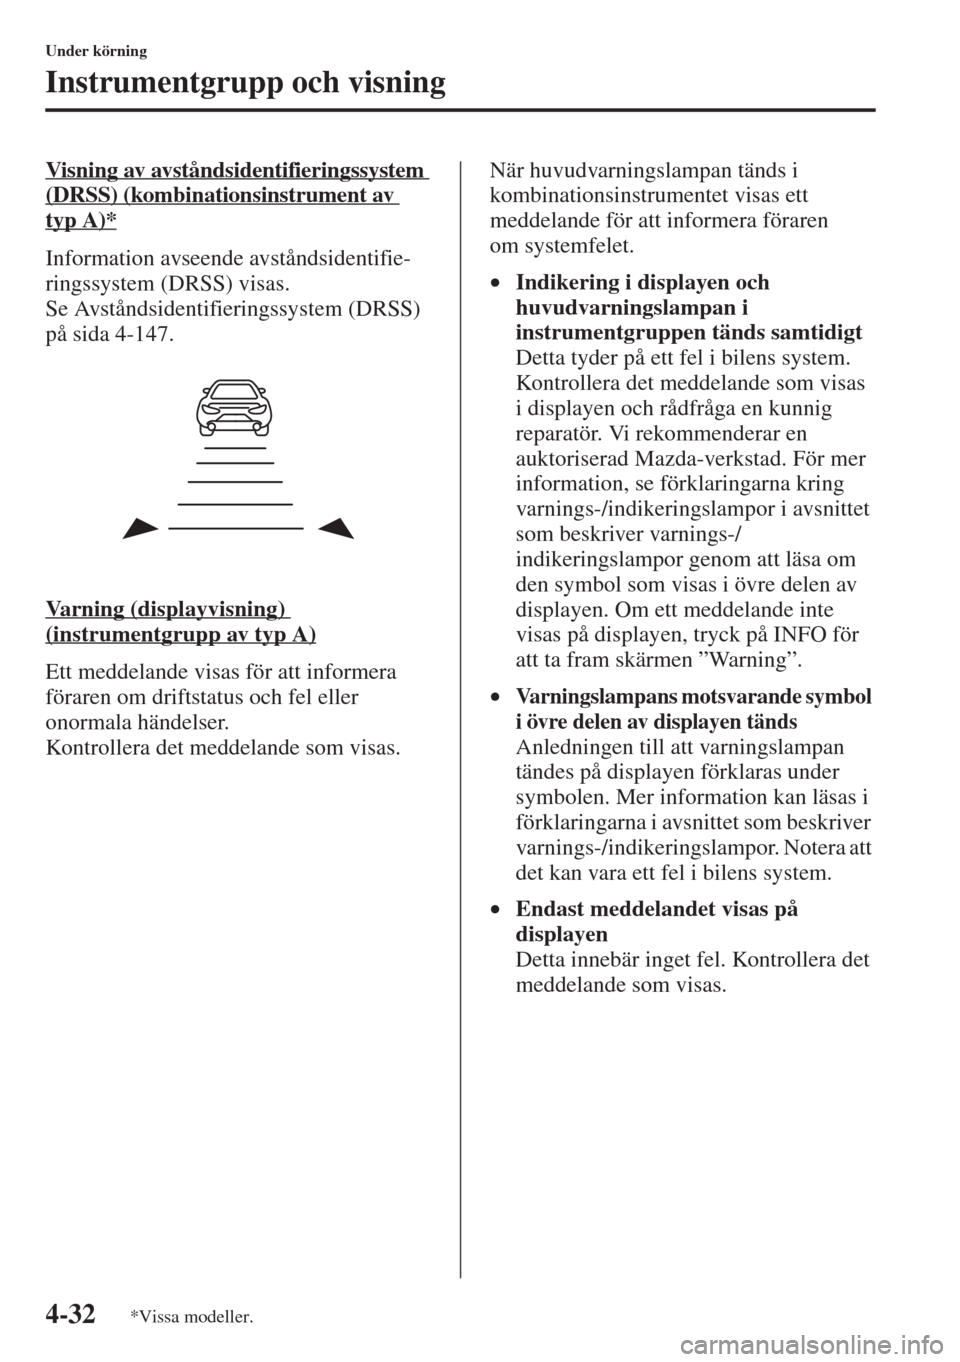 MAZDA MODEL CX-5 2015  Ägarmanual (in Swedish) 4-32
Under körning
Instrumentgrupp och visning
Visning av avståndsidentifieringssystem 
(DRSS) (kombinationsinstrument av 
typA)*
Information avseende avståndsidentifie-
ringssystem (DRSS) visas. 
